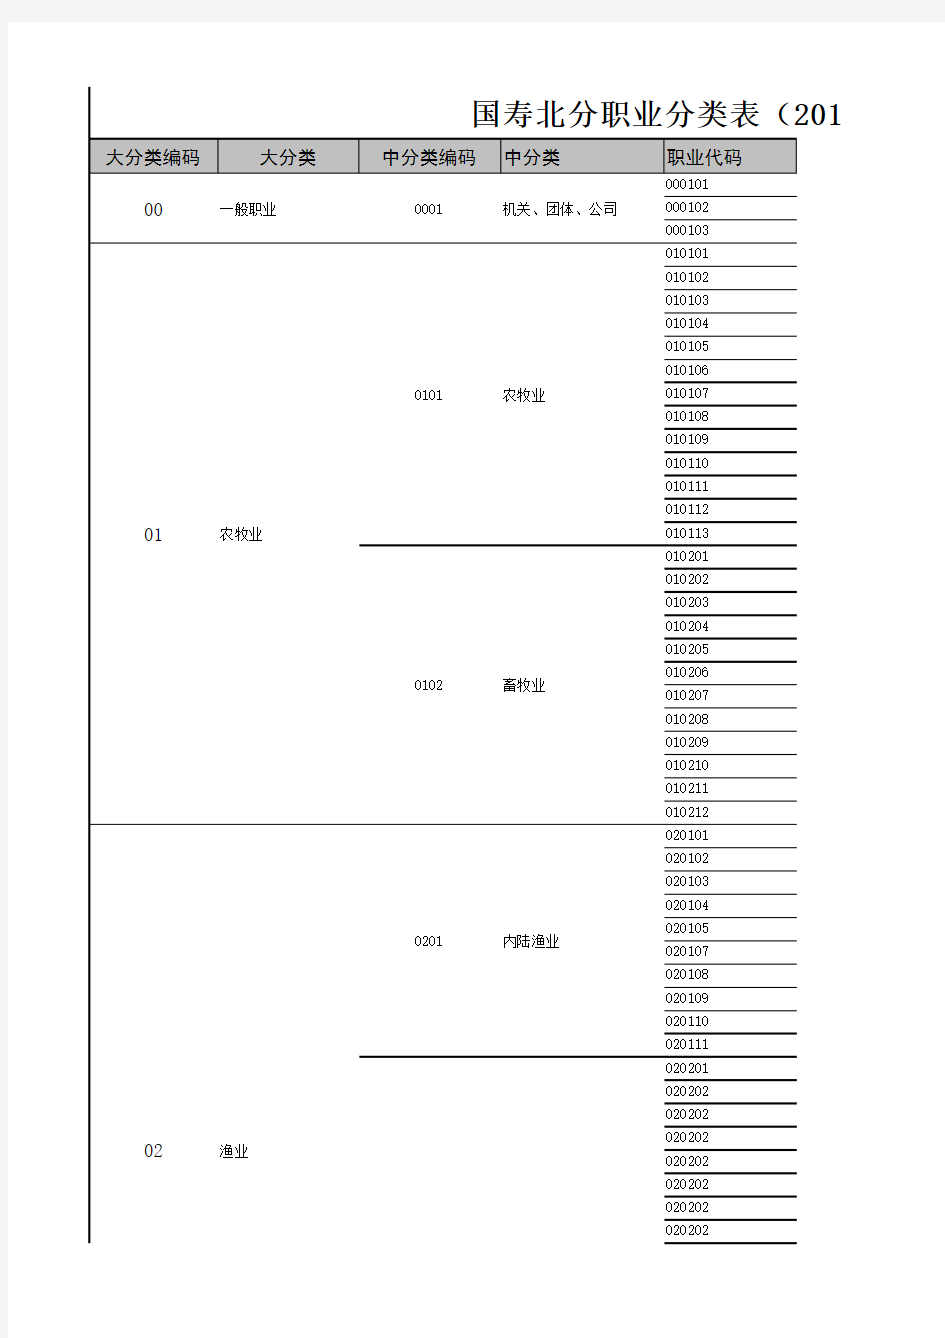 中国人寿2014版意外险职业表分类导入版(20140909)